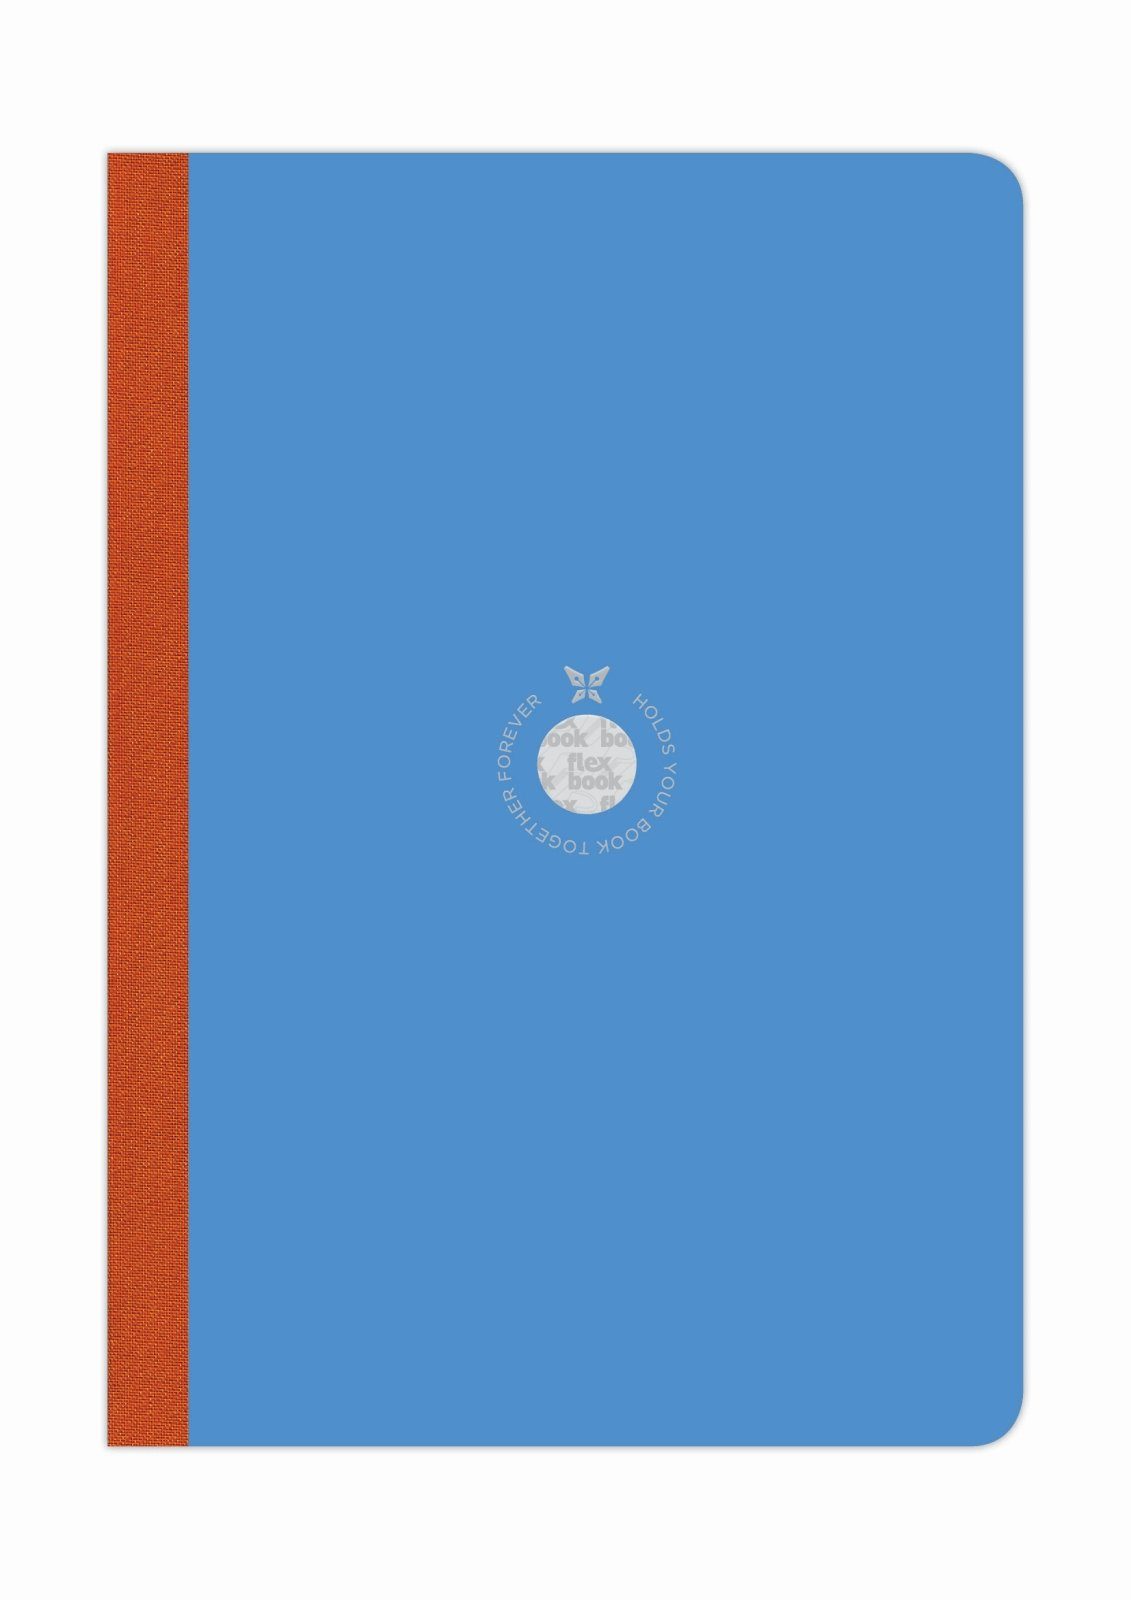 17*24cm Größen/Fa Notizbuch 160 Flexbook Flexbook Blau viele Seiten Ökopapiereinband Liniert Smartbook